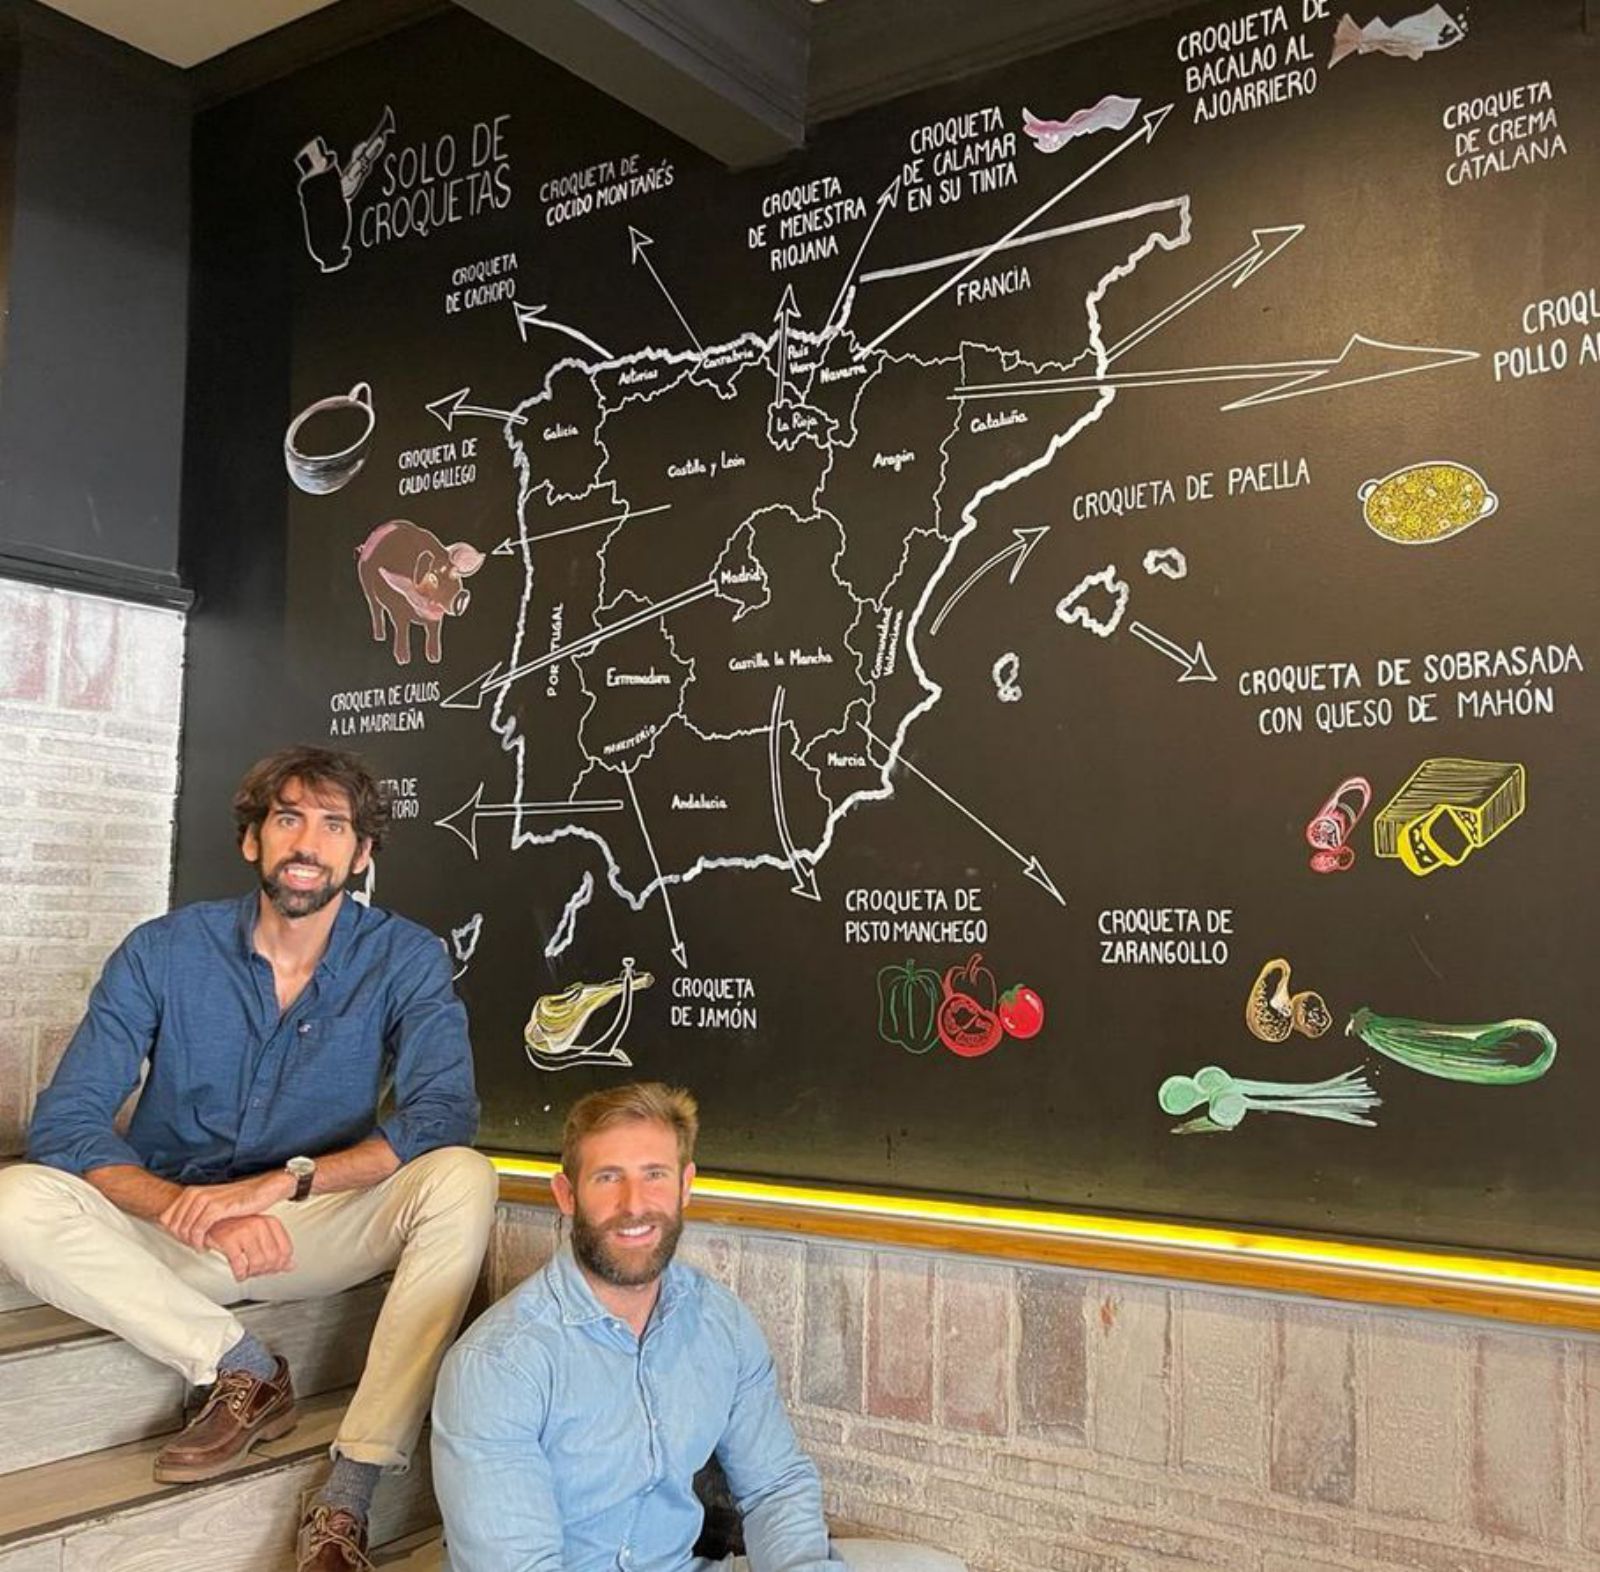 Eduardo Gambero y Javier del Moral, ante el mapa croquetero de España, en su restaurante madrileño. | Solo de croquetas